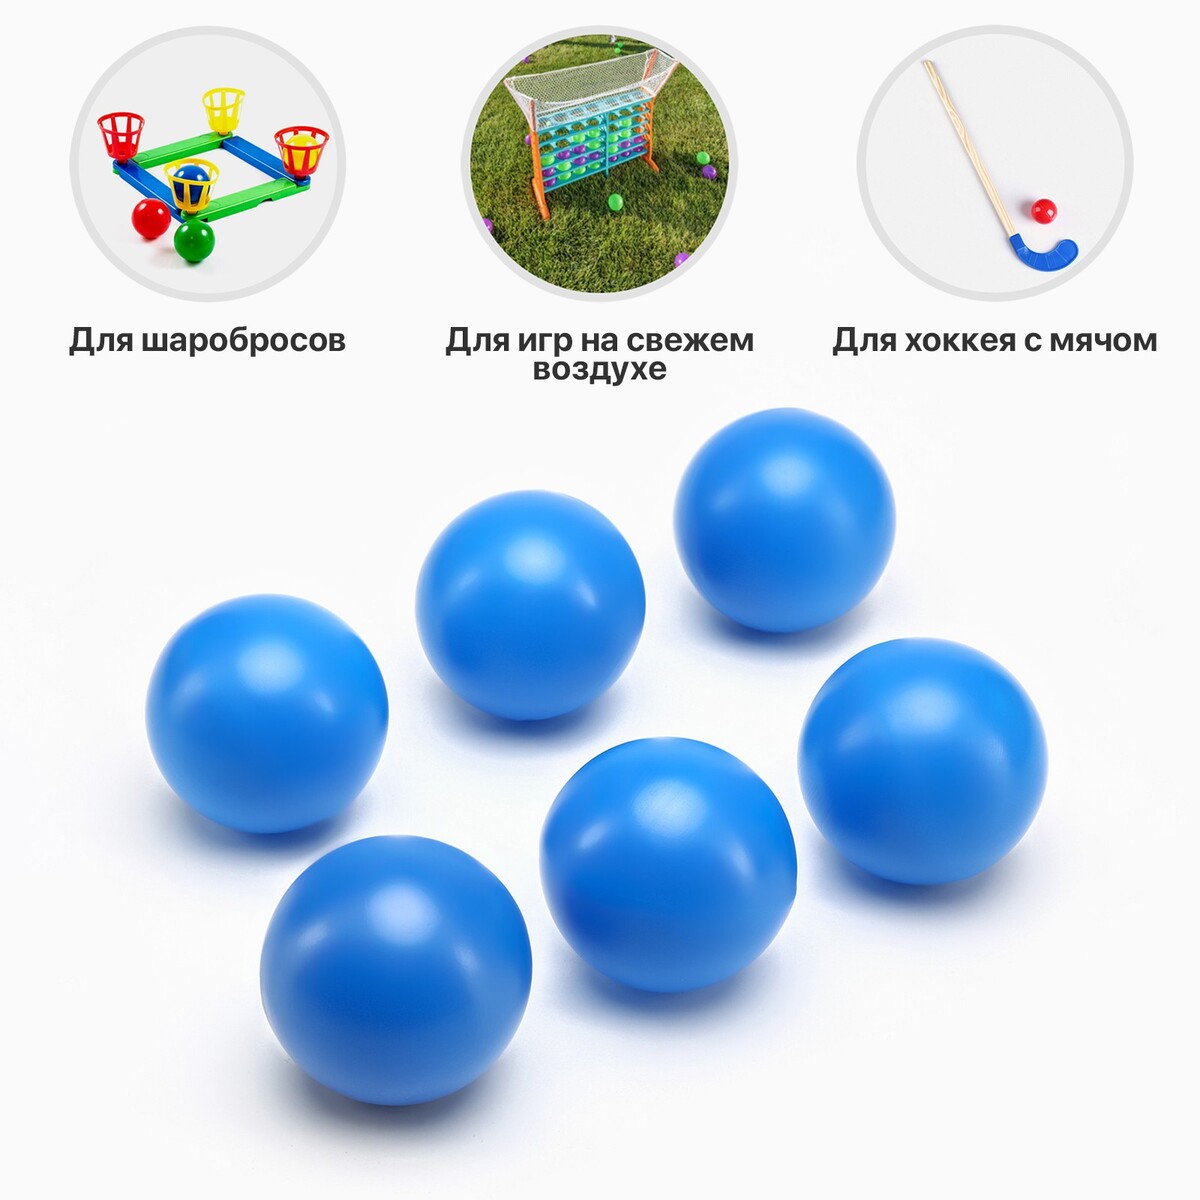 Набор мячей для садовых игр, хоккея, 6 шт, d-7 см набор мячей для настольного тенниса boshika expert 3 d 40 мм 6 шт белый